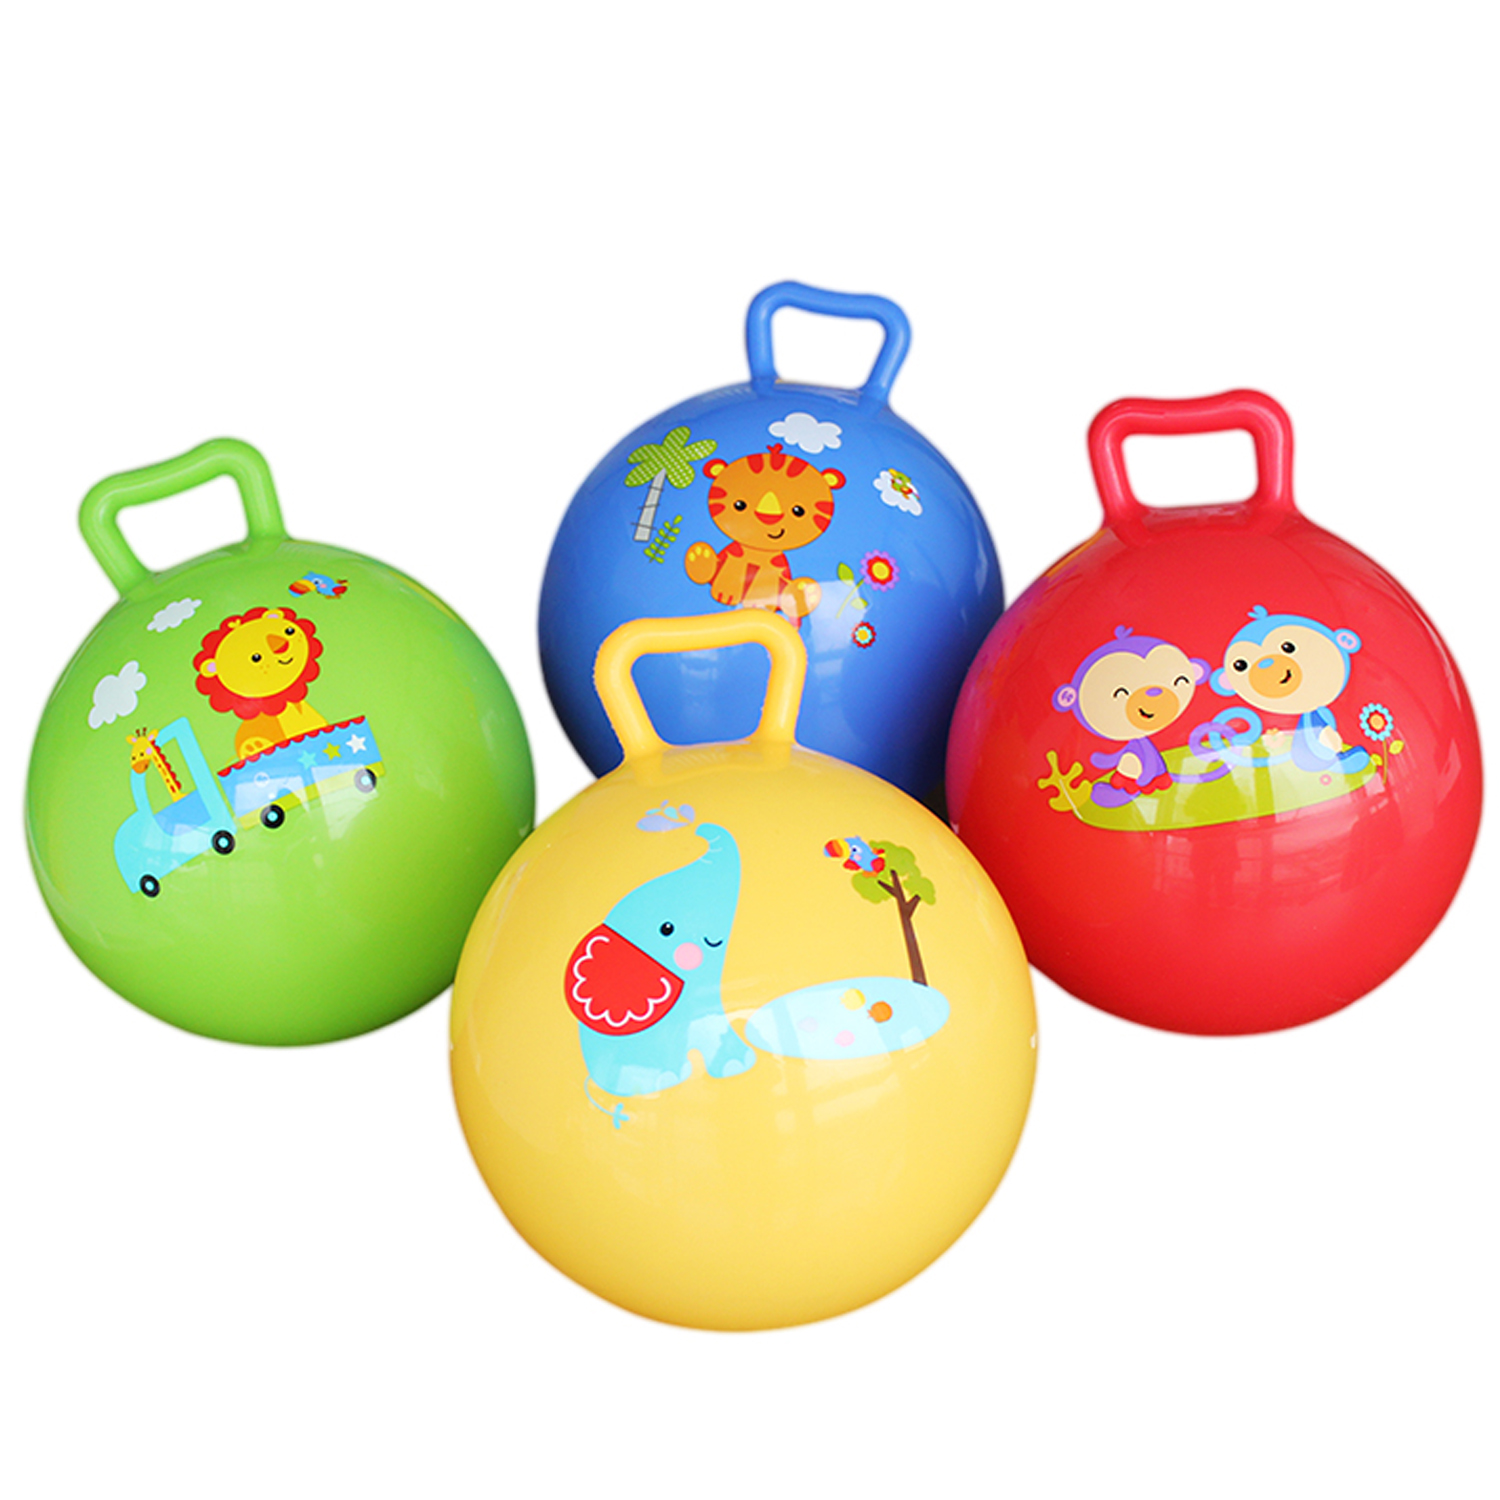 费雪玩具球类儿童抓握练习球10寸婴儿宝宝球类玩具手柄摇摇球幼儿F0601绿色